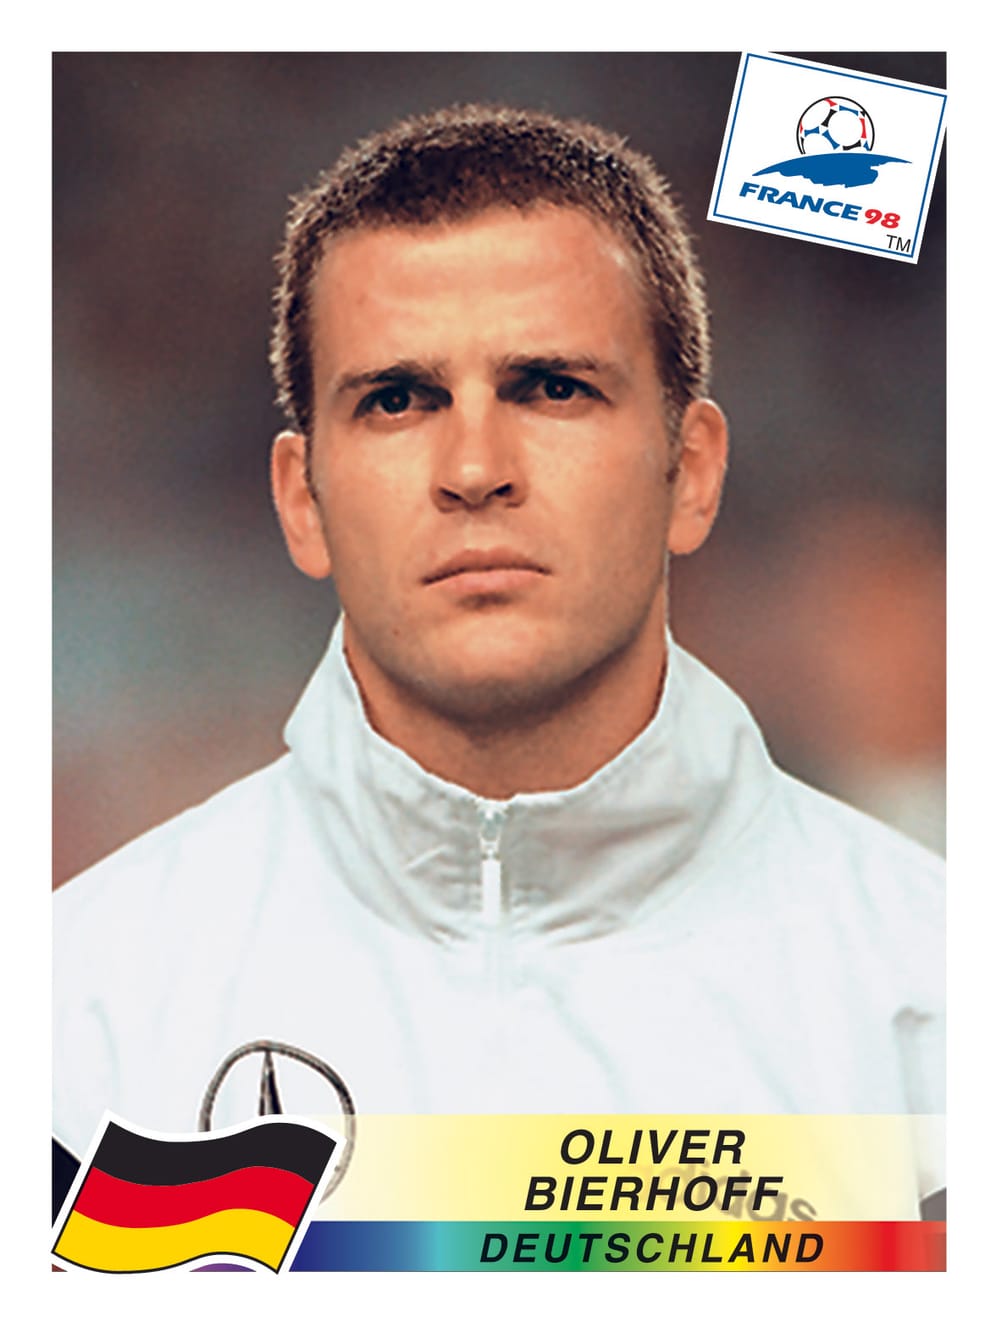 1998 trug Oliver Bierhoff einen raspelkurzen Igelschnitt. Der Kult-Kicker managt heute die deutsche Fußball-Nationalmannschaft.